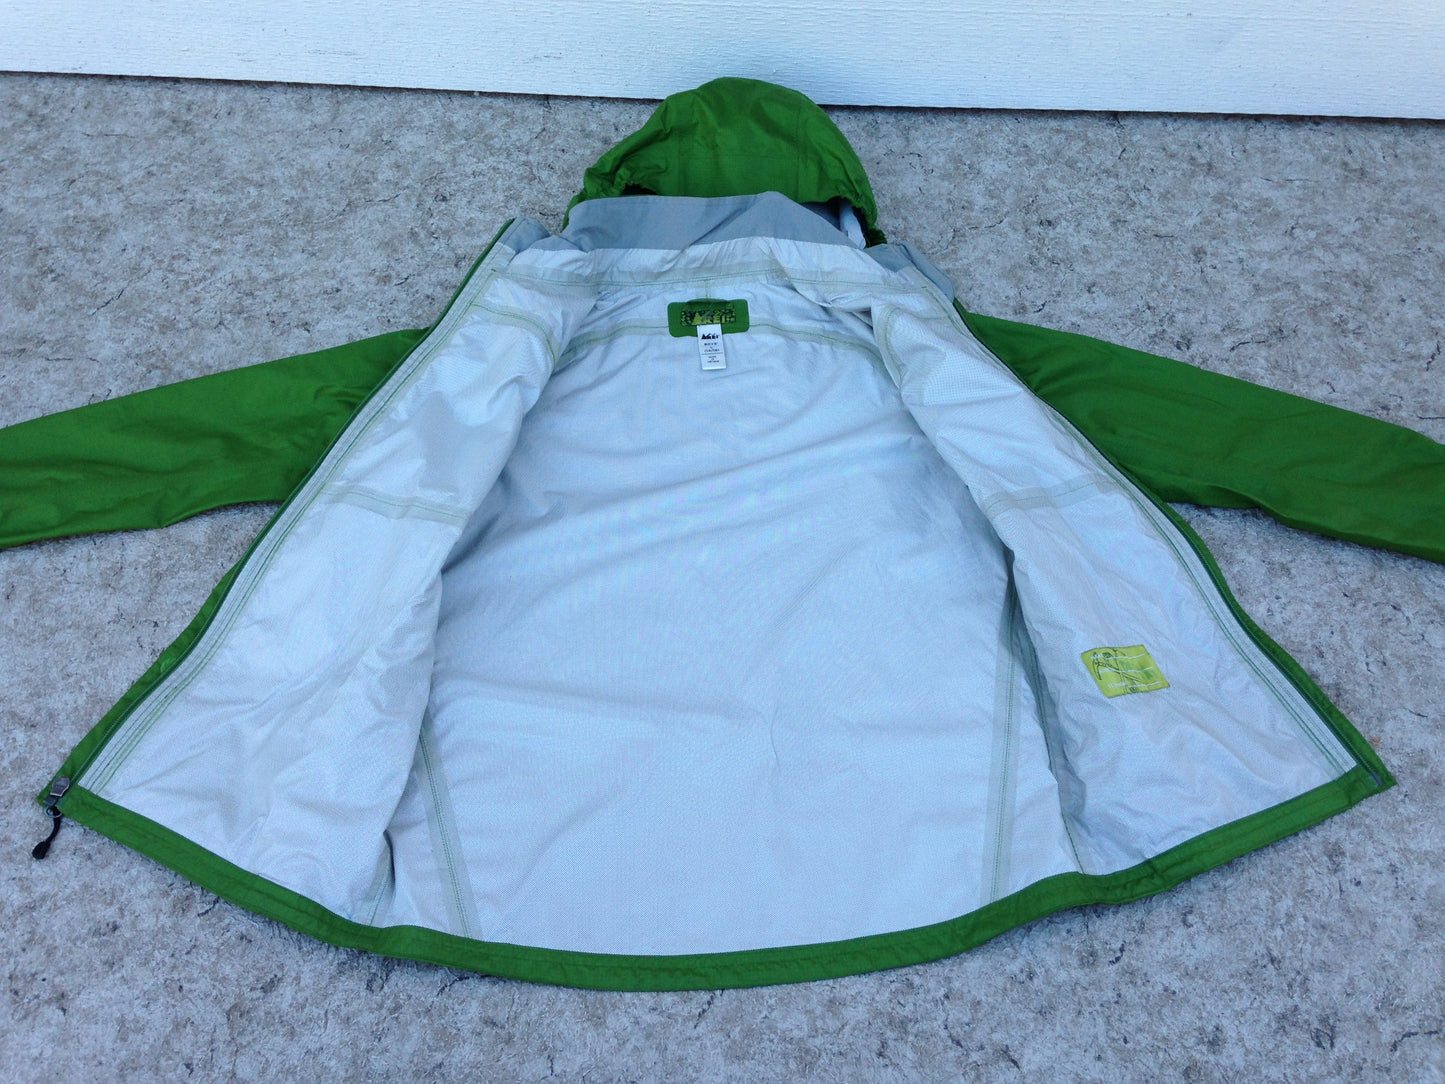 Rain Coat Child Size 14-16 REI Waterproof Green Excellent